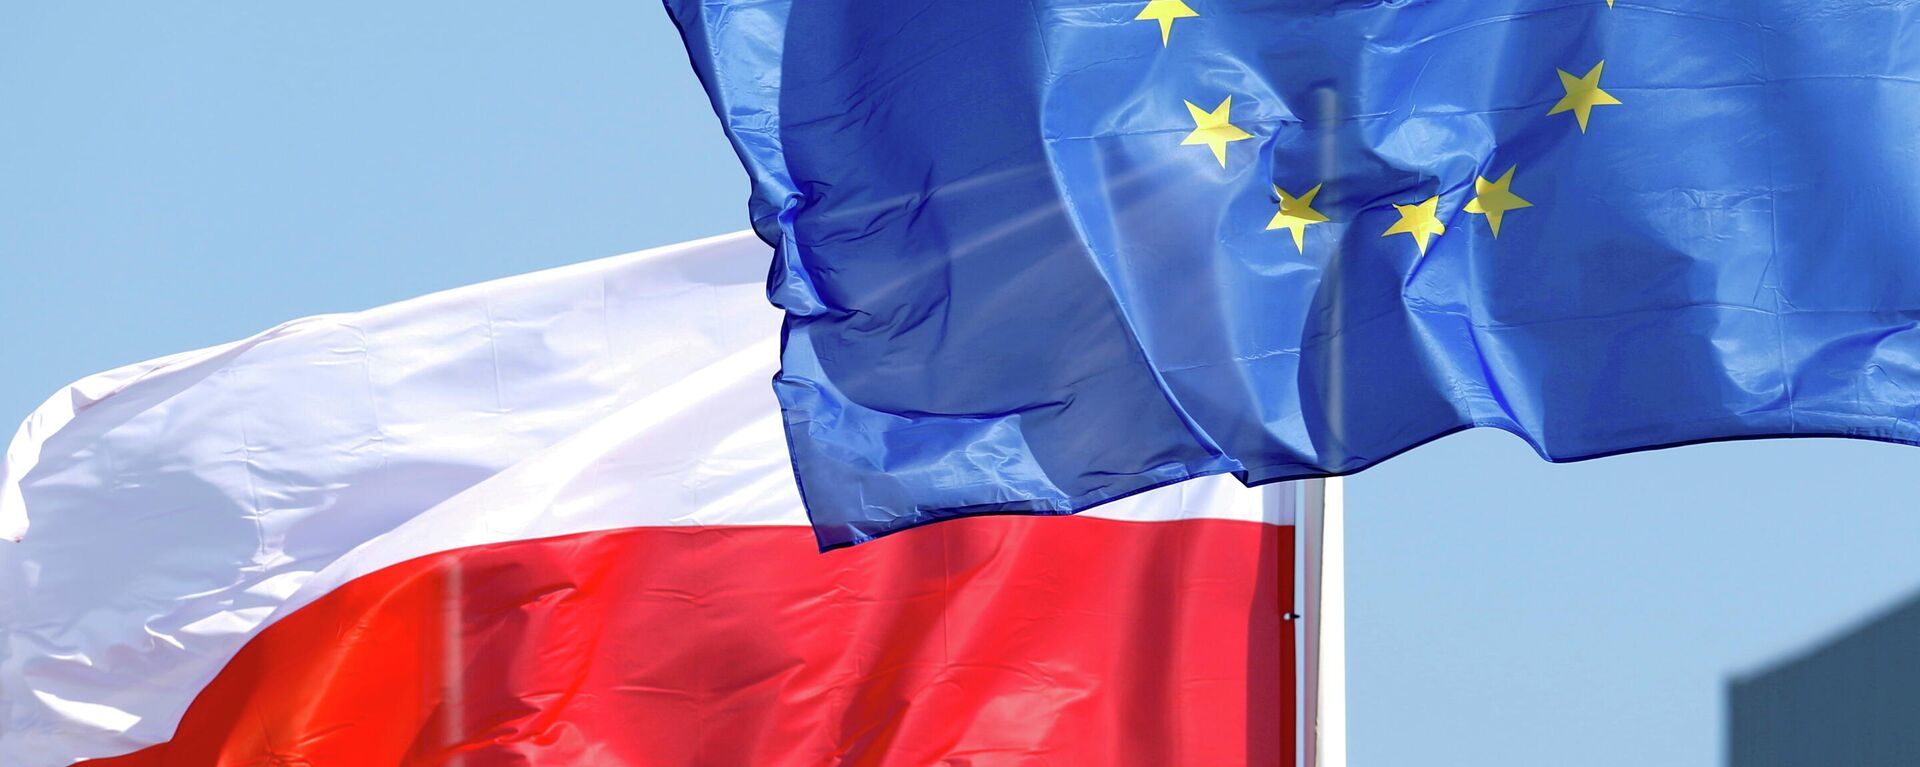 Banderas de Polonia y la UE - Sputnik Mundo, 1920, 21.10.2021